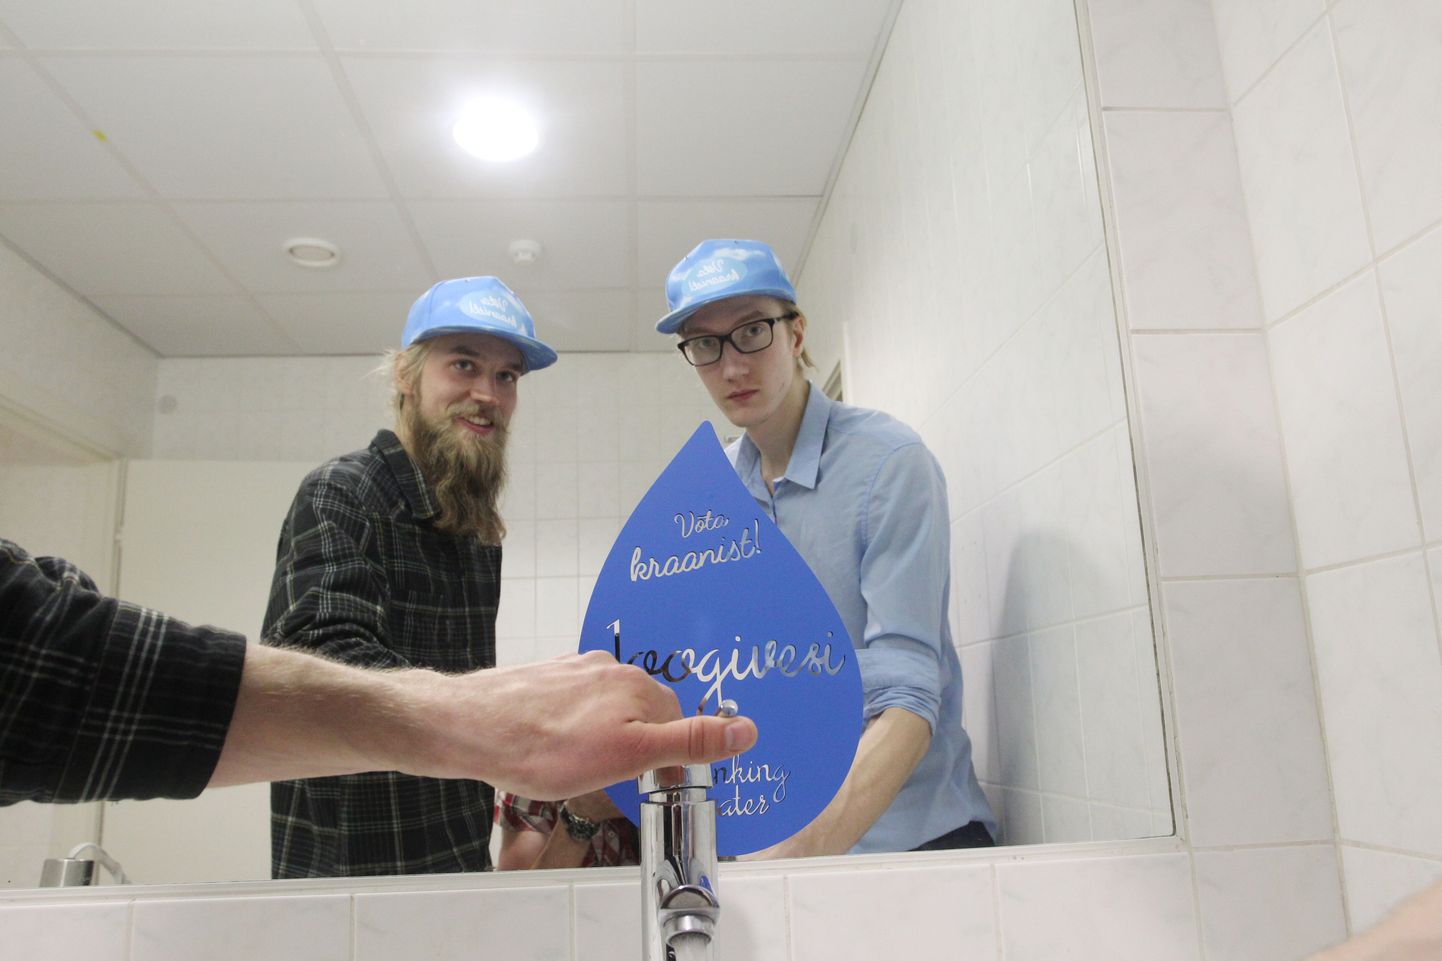 Eelmise aasta konkursi Negavatt võitis kraanivee projekt "Võta kraanist" ja ülikoolide õppehoonetesse paigaldati kraanid, kust oleks mugav pudeliga vett võtta.